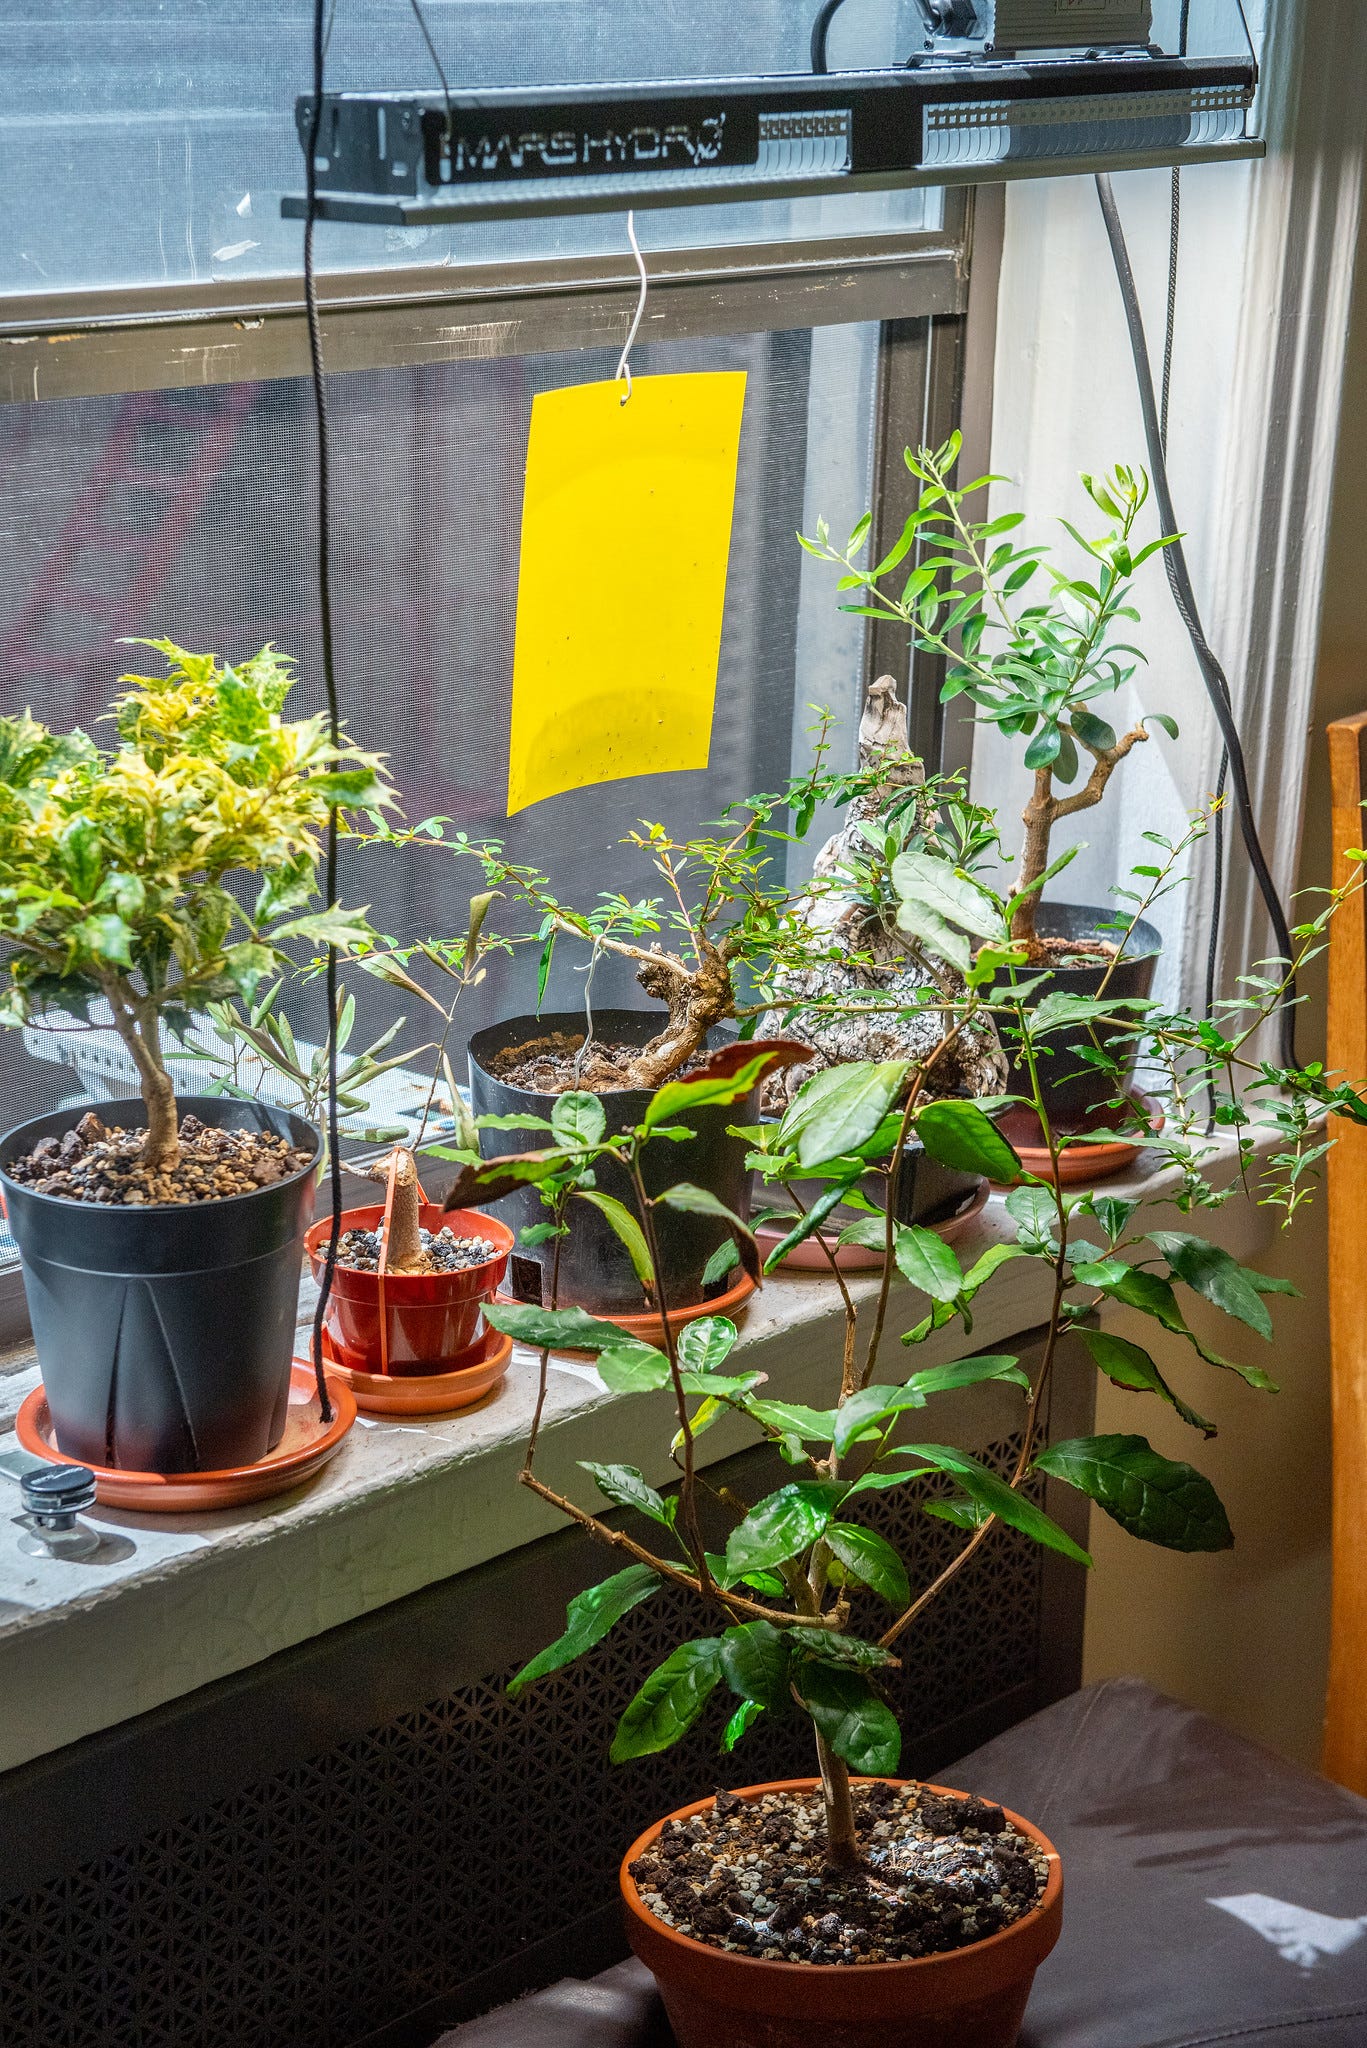 ID: Subtropical bonsai indoor grow room